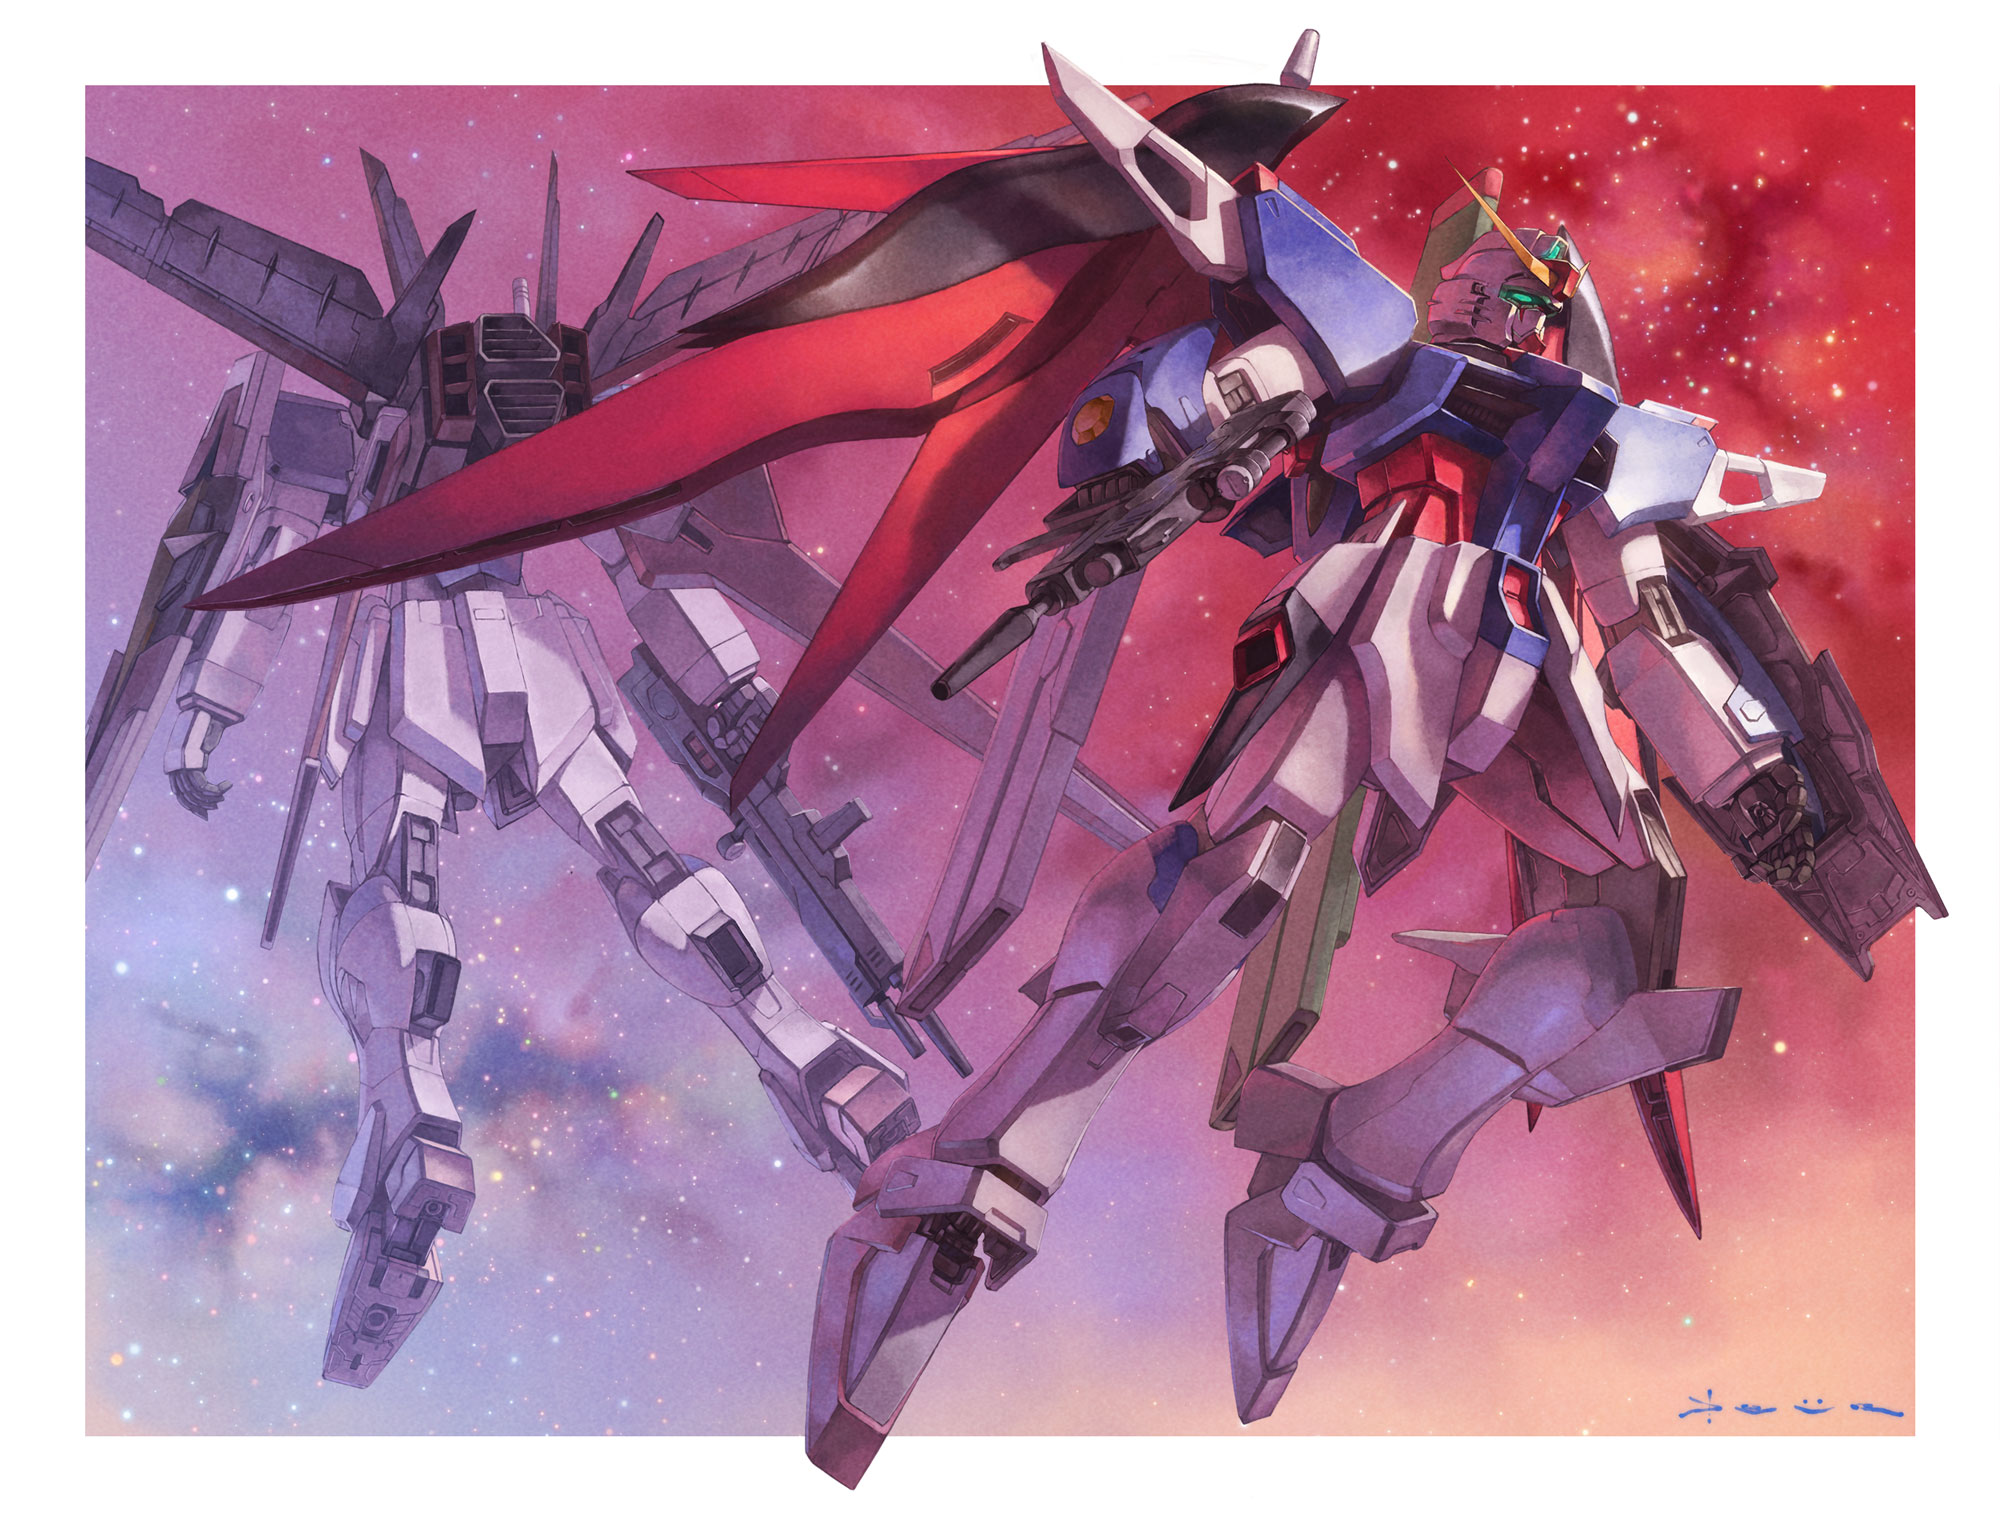 Anime Mechs Super Robot Taisen Gundam Artwork Digital Art Fan Art Destiny Gundam Force Impulse Gunda 2000x1521